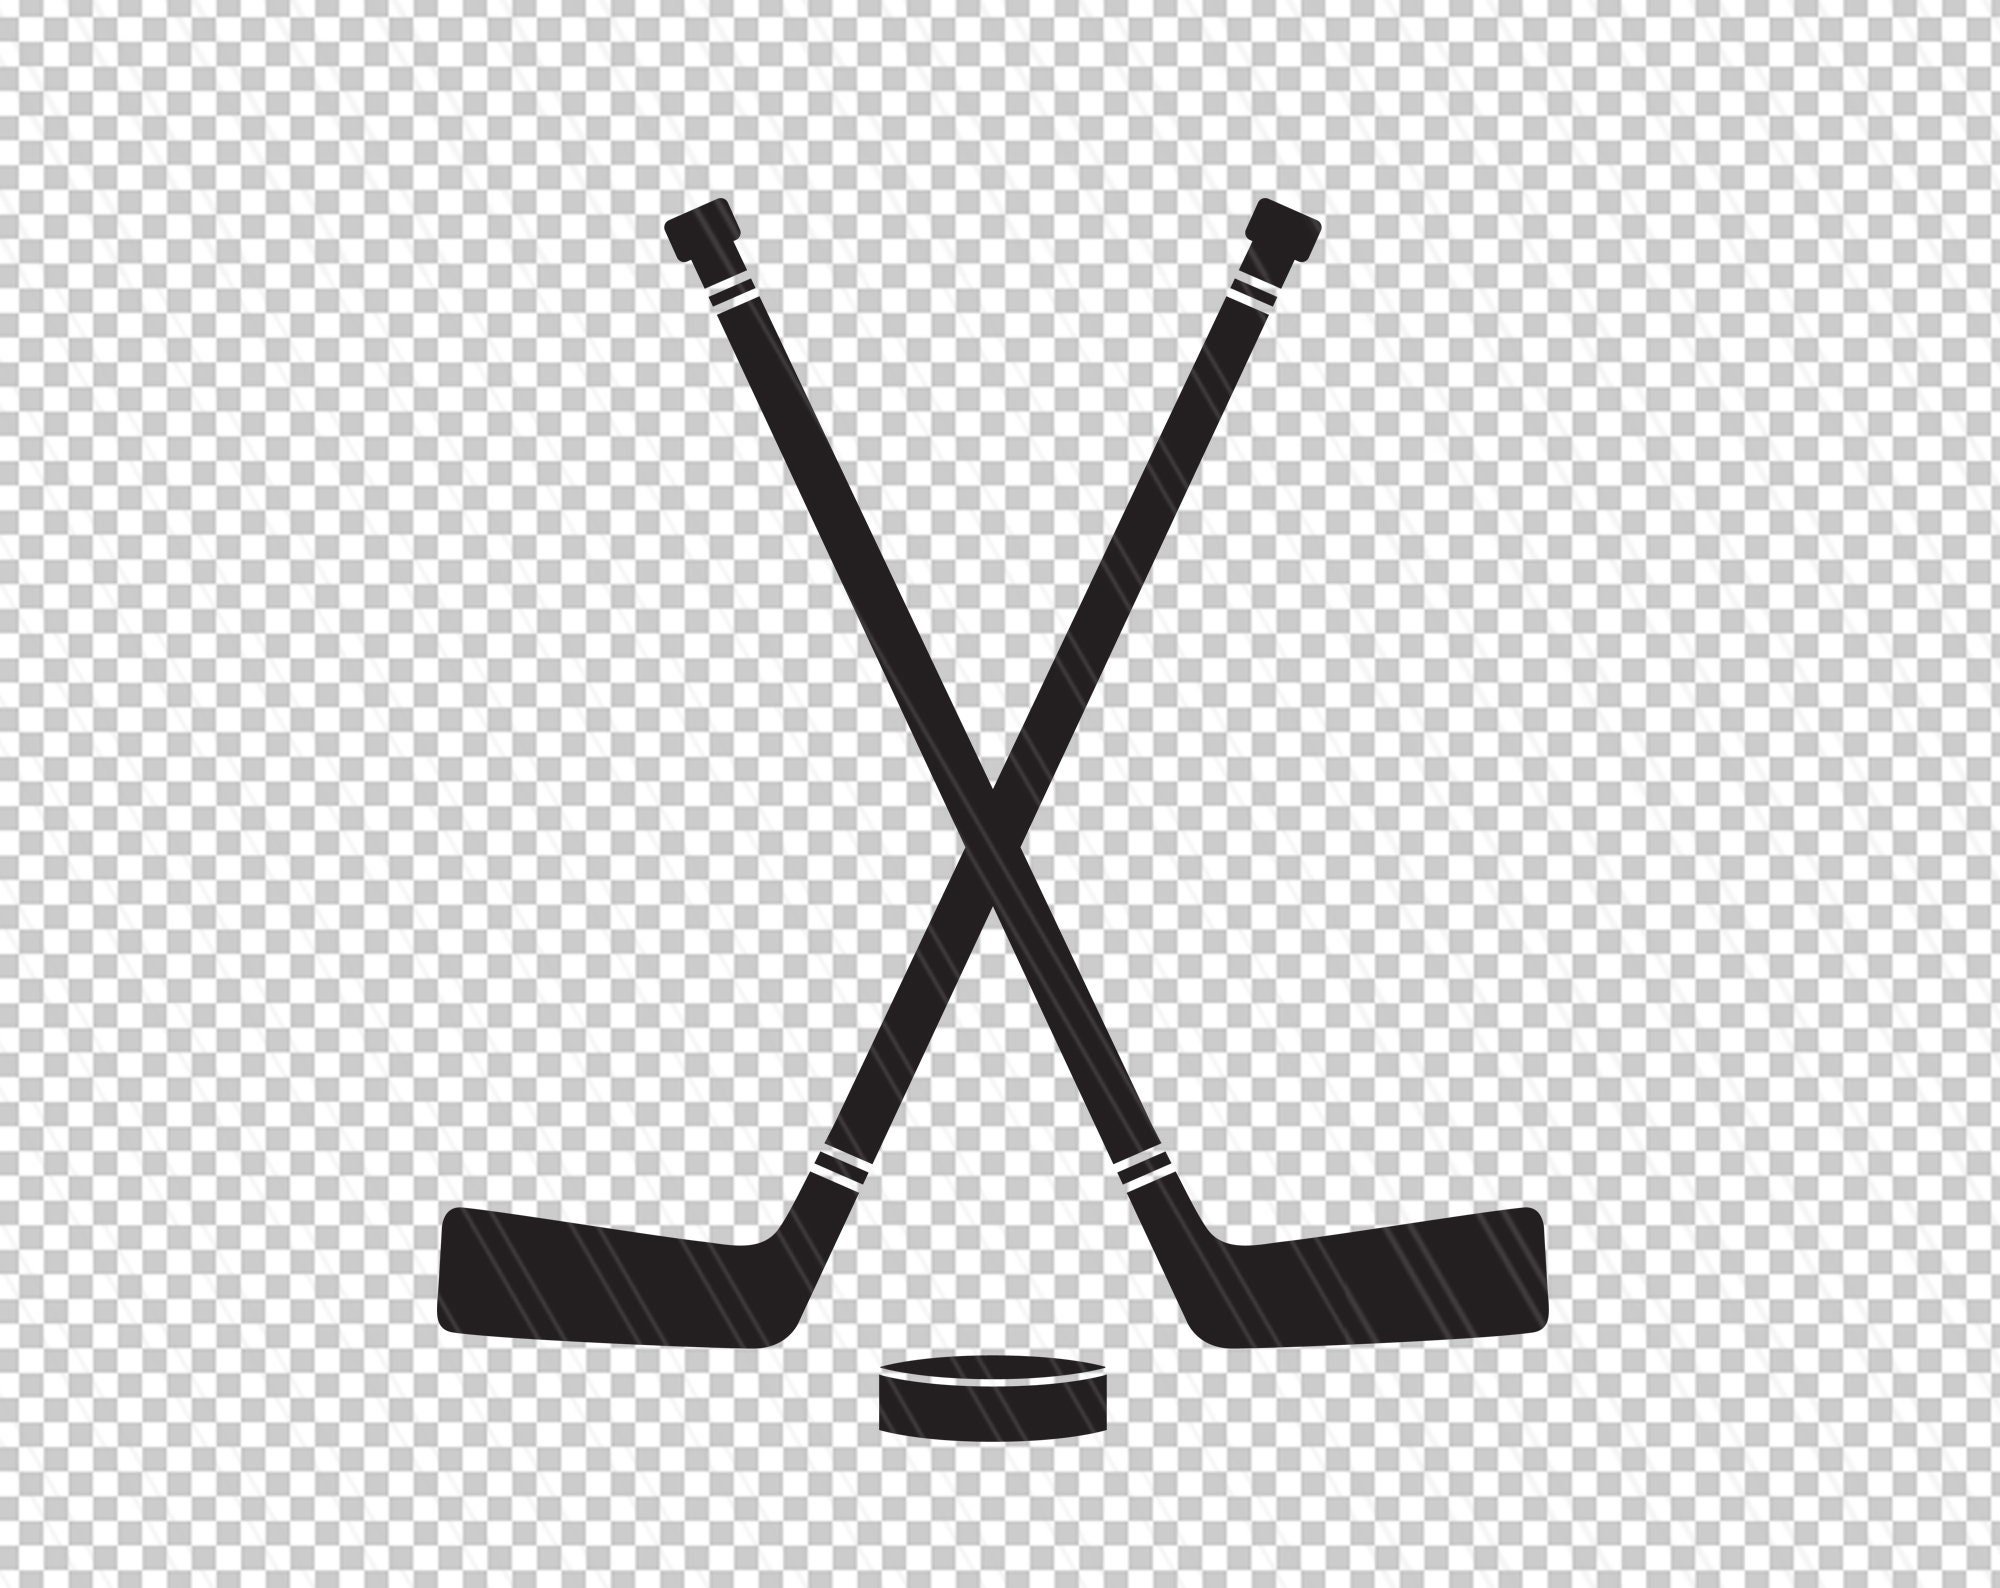 Hockey Stick SVG  Hockey Sticks SVG Graphic by lddigital